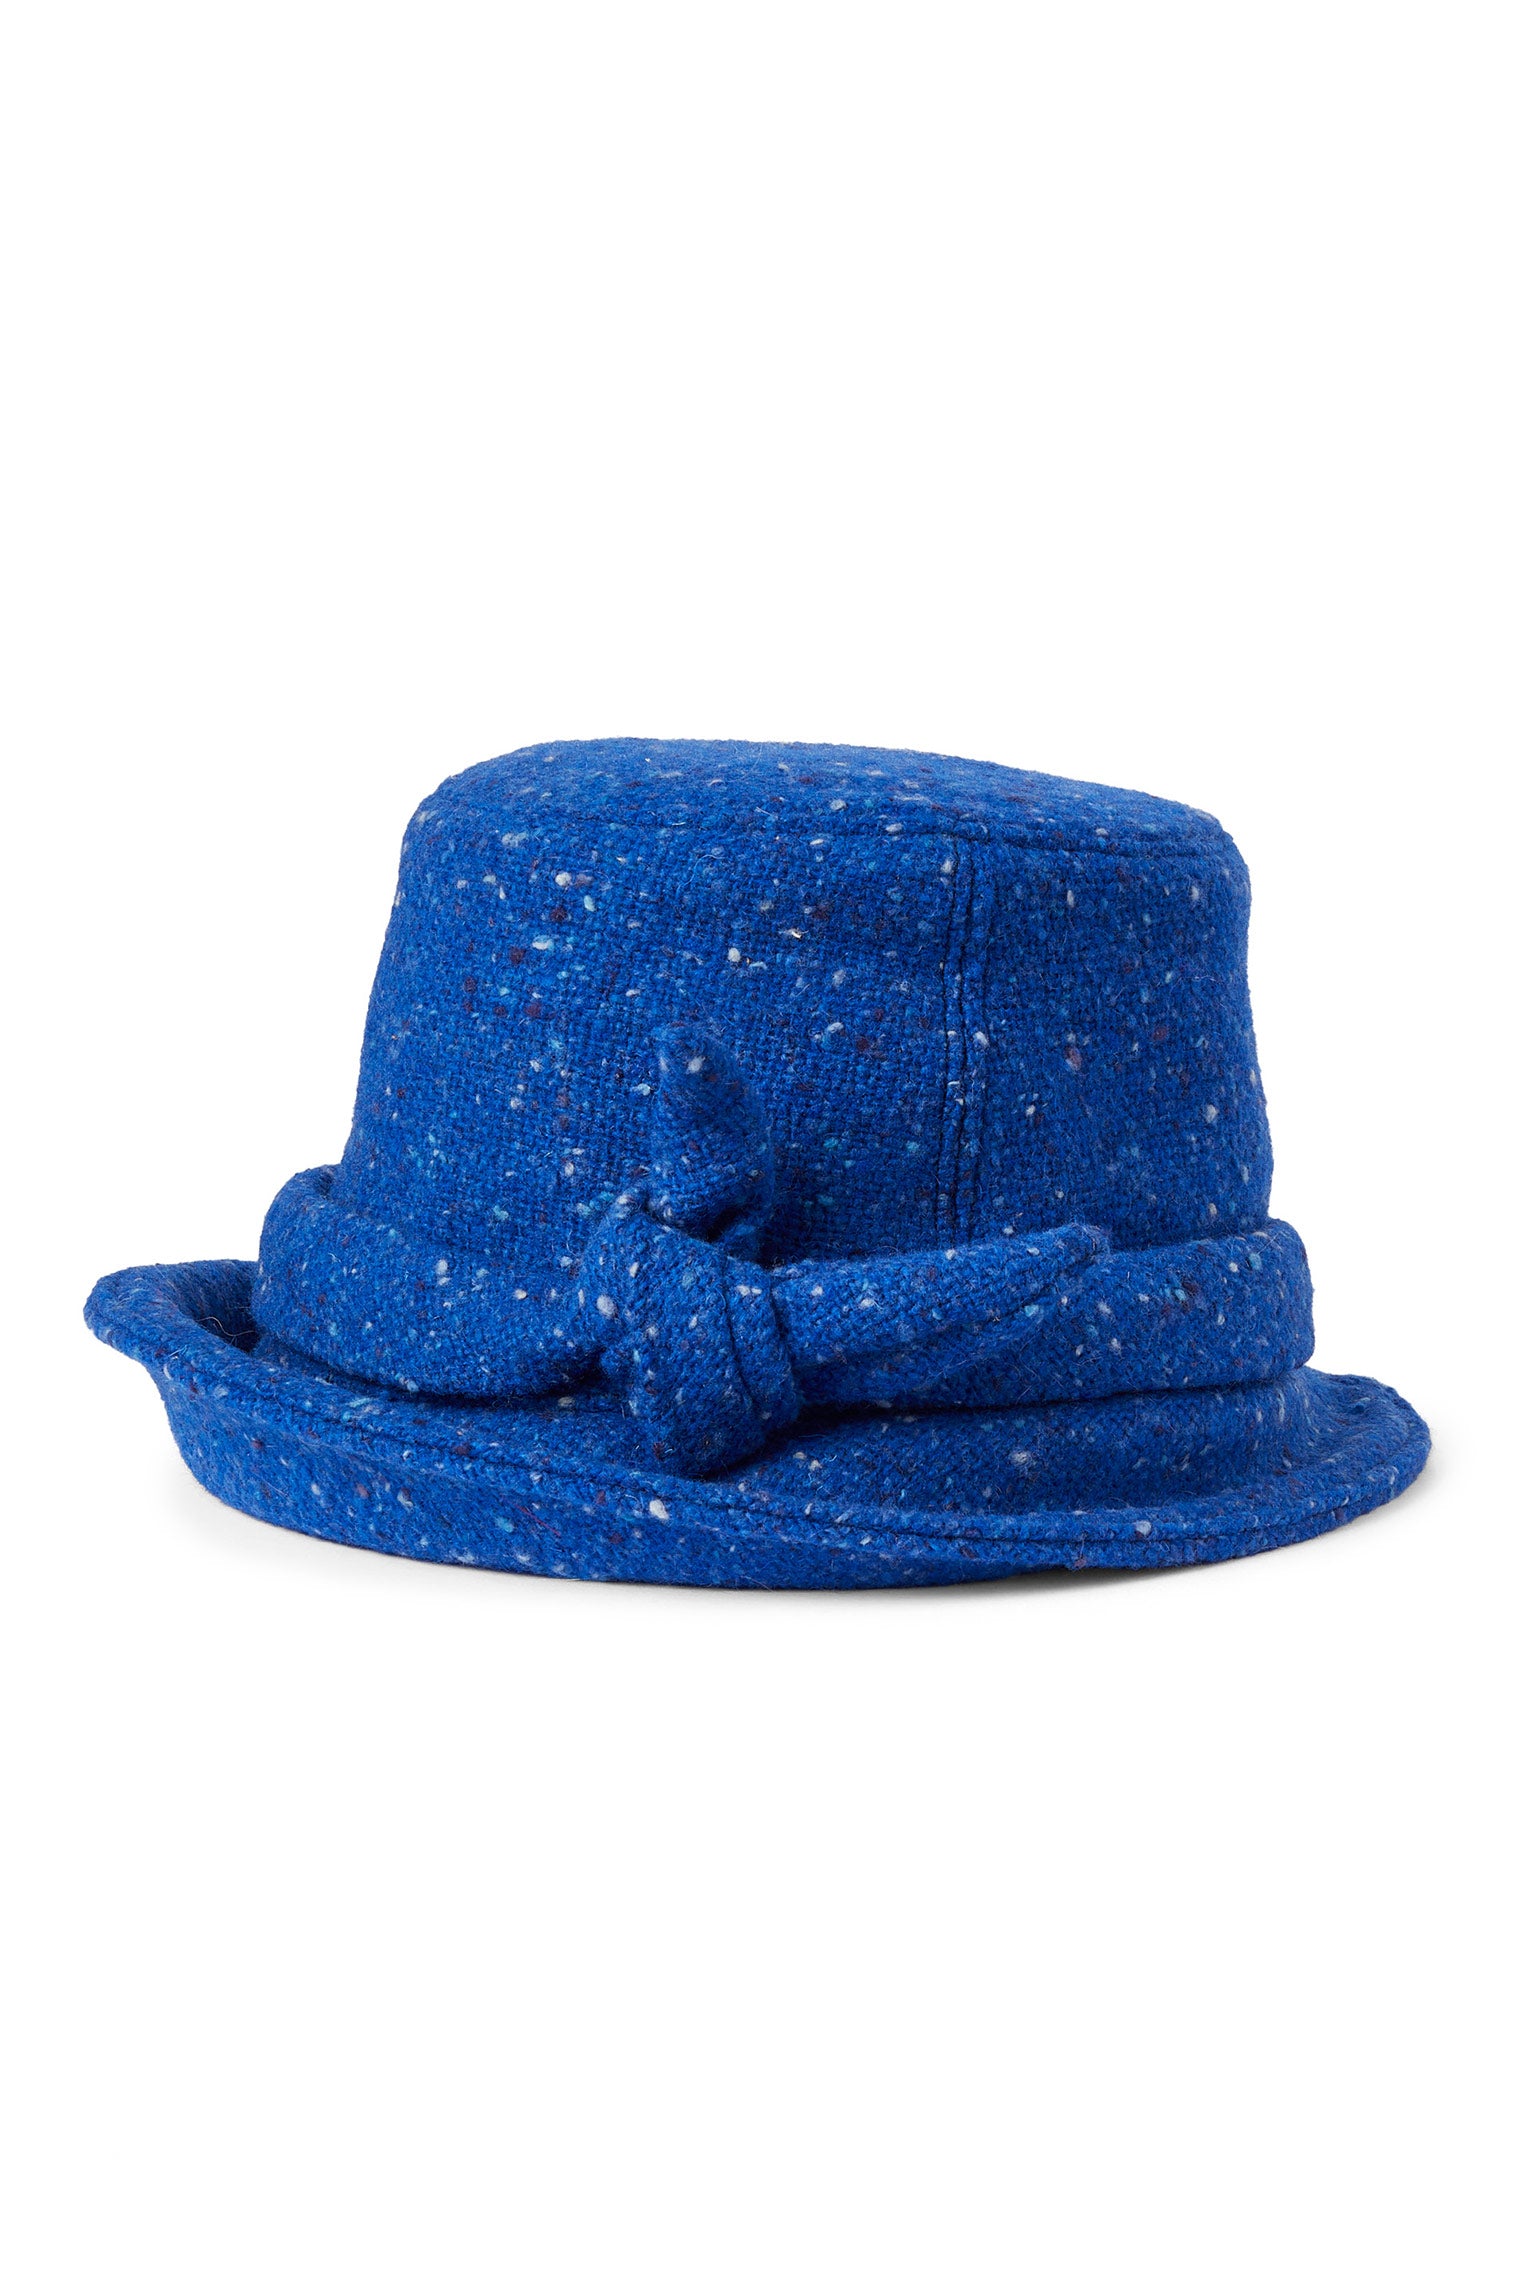 Dolores Blue Cloche - New Season Women's Hats - Lock & Co. Hatters London UK